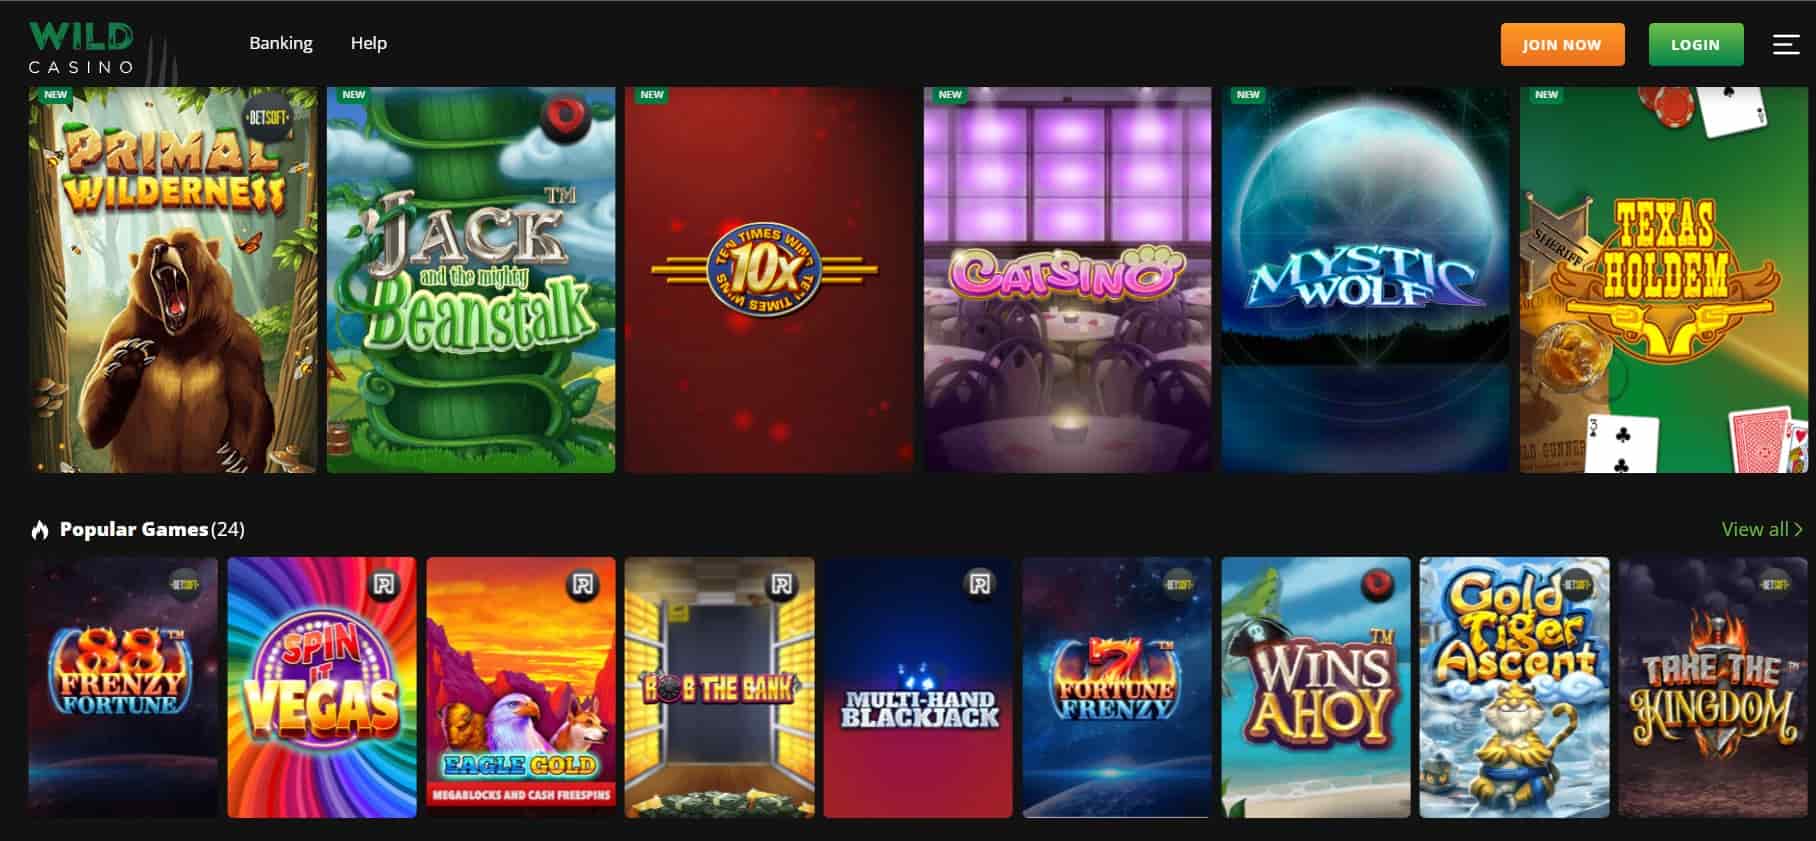 Wild Casino Online Games